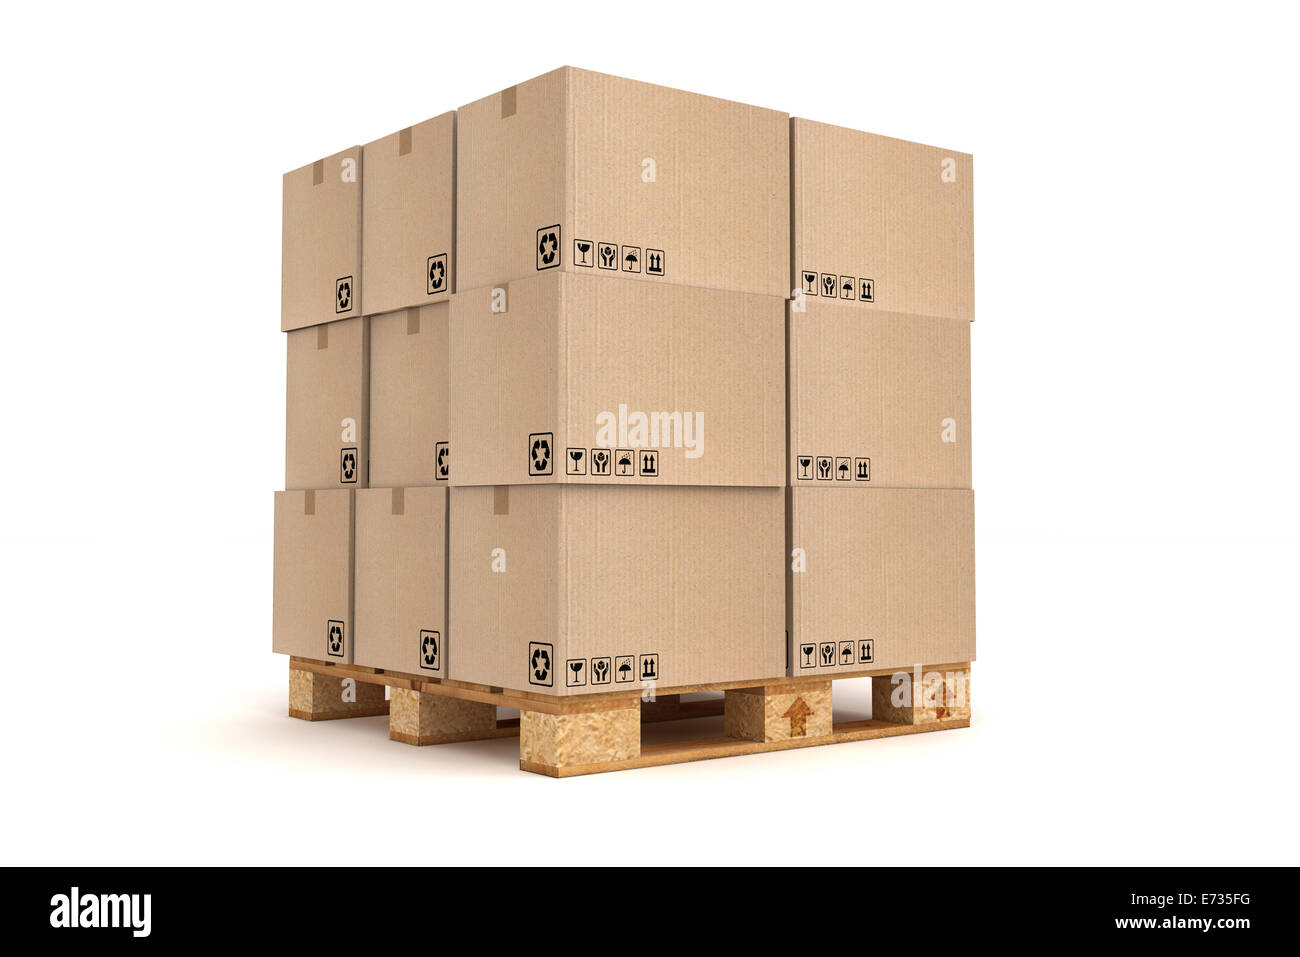 Kartons auf Palette. Fracht, Lieferung und Transport-Logistik-Lagerung  Stockfotografie - Alamy